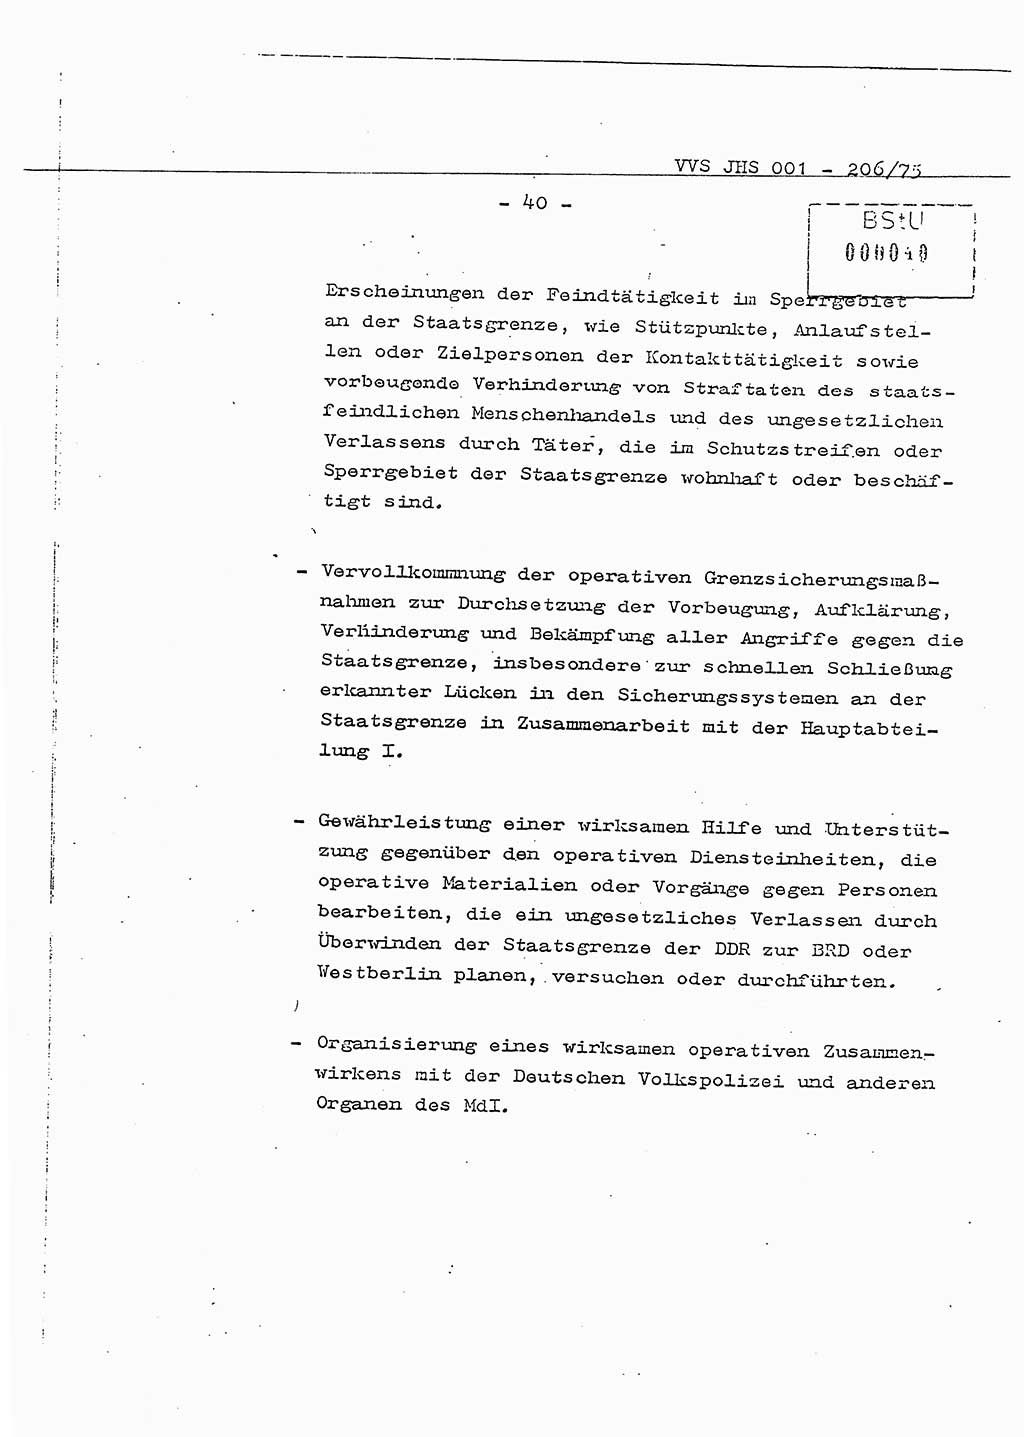 Dissertation Generalmajor Manfred Hummitzsch (Leiter der BV Leipzig), Generalmajor Heinz Fiedler (HA Ⅵ), Oberst Rolf Fister (HA Ⅸ), Ministerium für Staatssicherheit (MfS) [Deutsche Demokratische Republik (DDR)], Juristische Hochschule (JHS), Vertrauliche Verschlußsache (VVS) 001-206/75, Potsdam 1975, Seite 40 (Diss. MfS DDR JHS VVS 001-206/75 1975, S. 40)